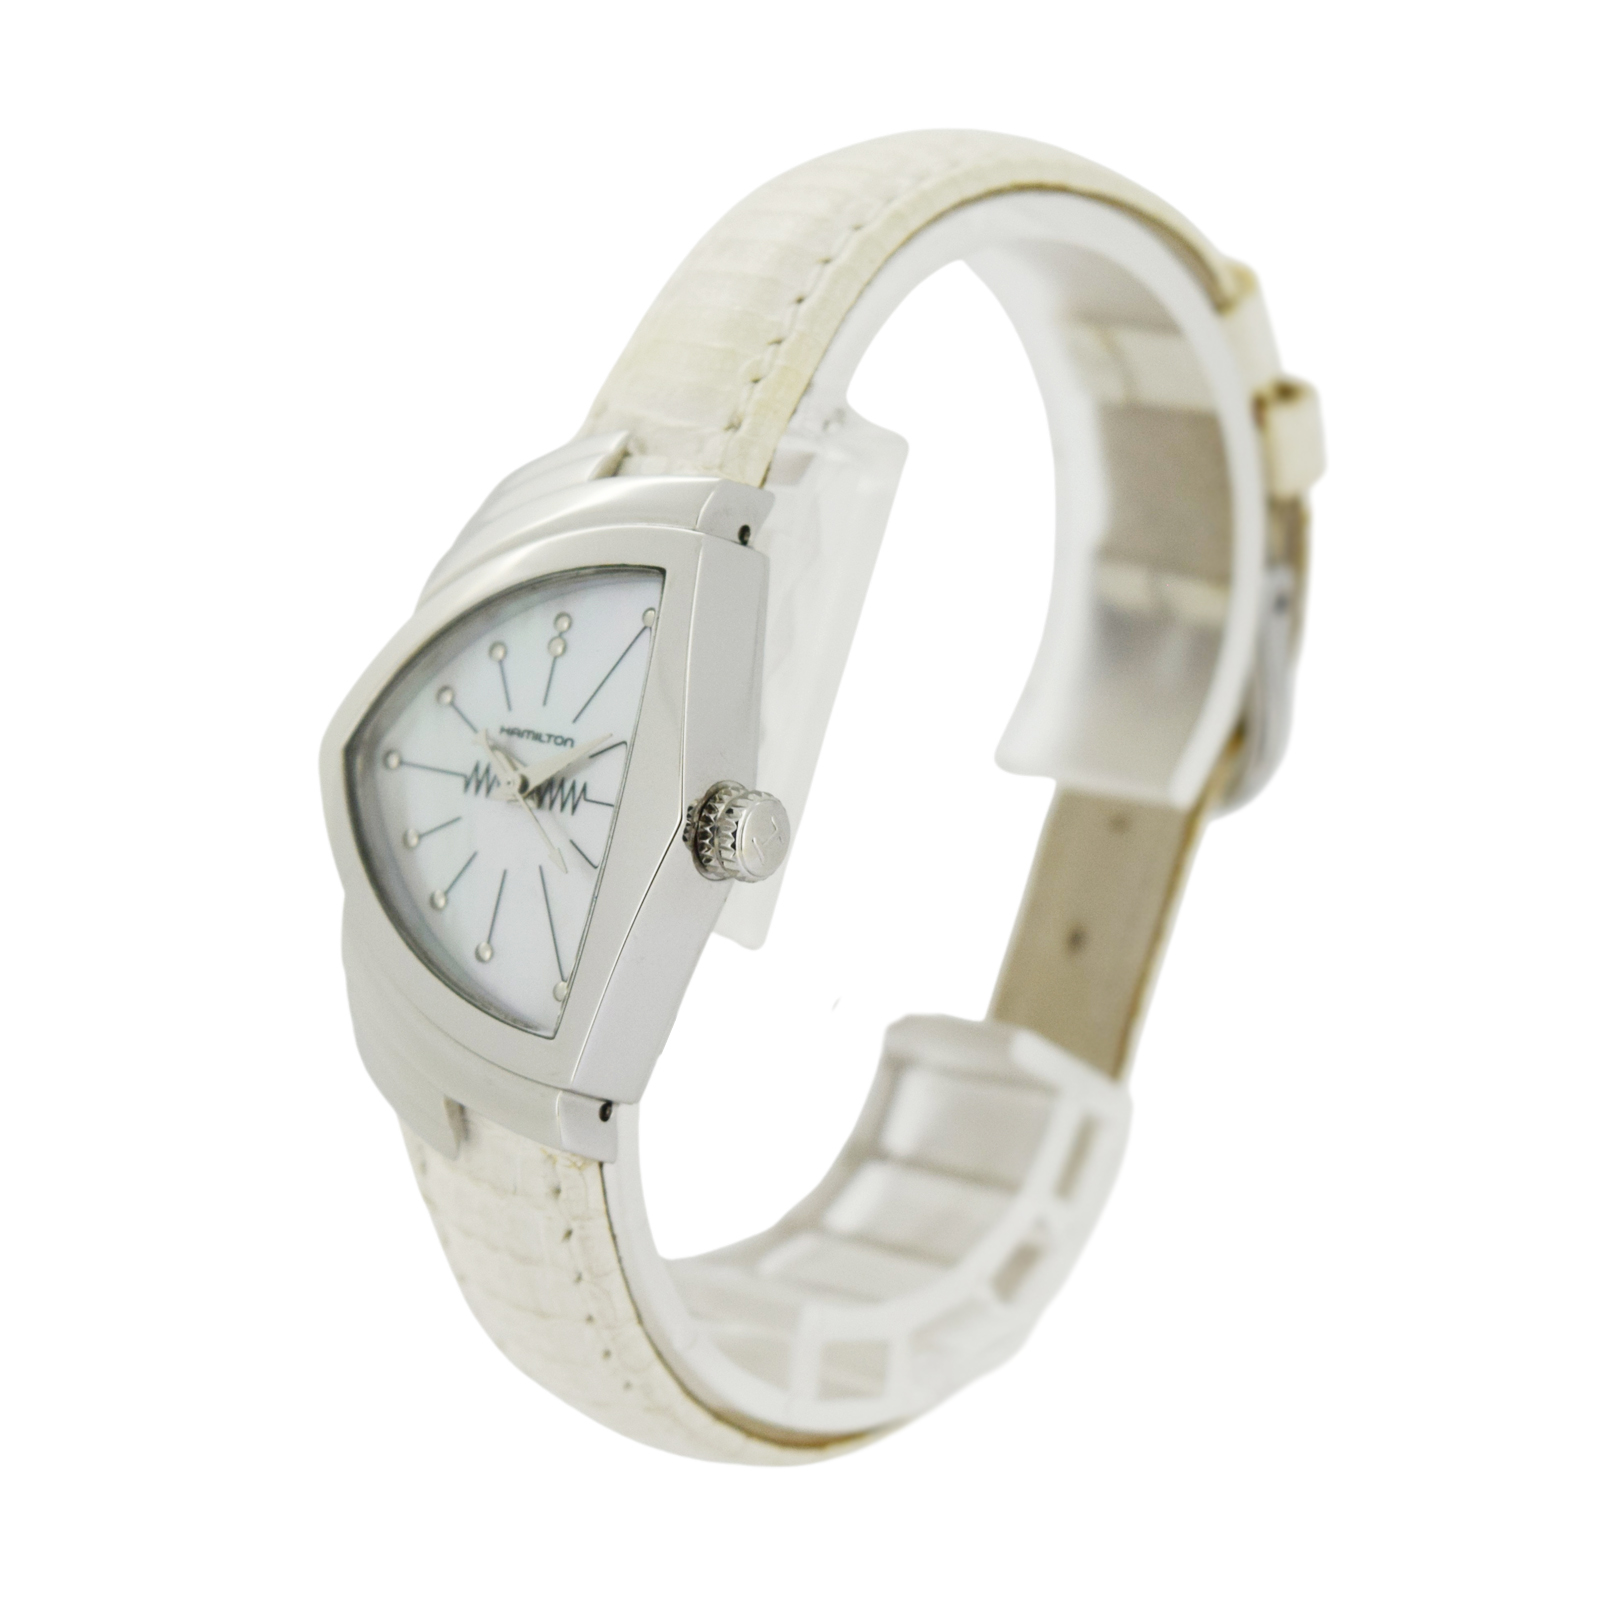 シルバーHAMILTON ベンチュラ H242111 シェル文字盤 腕時計